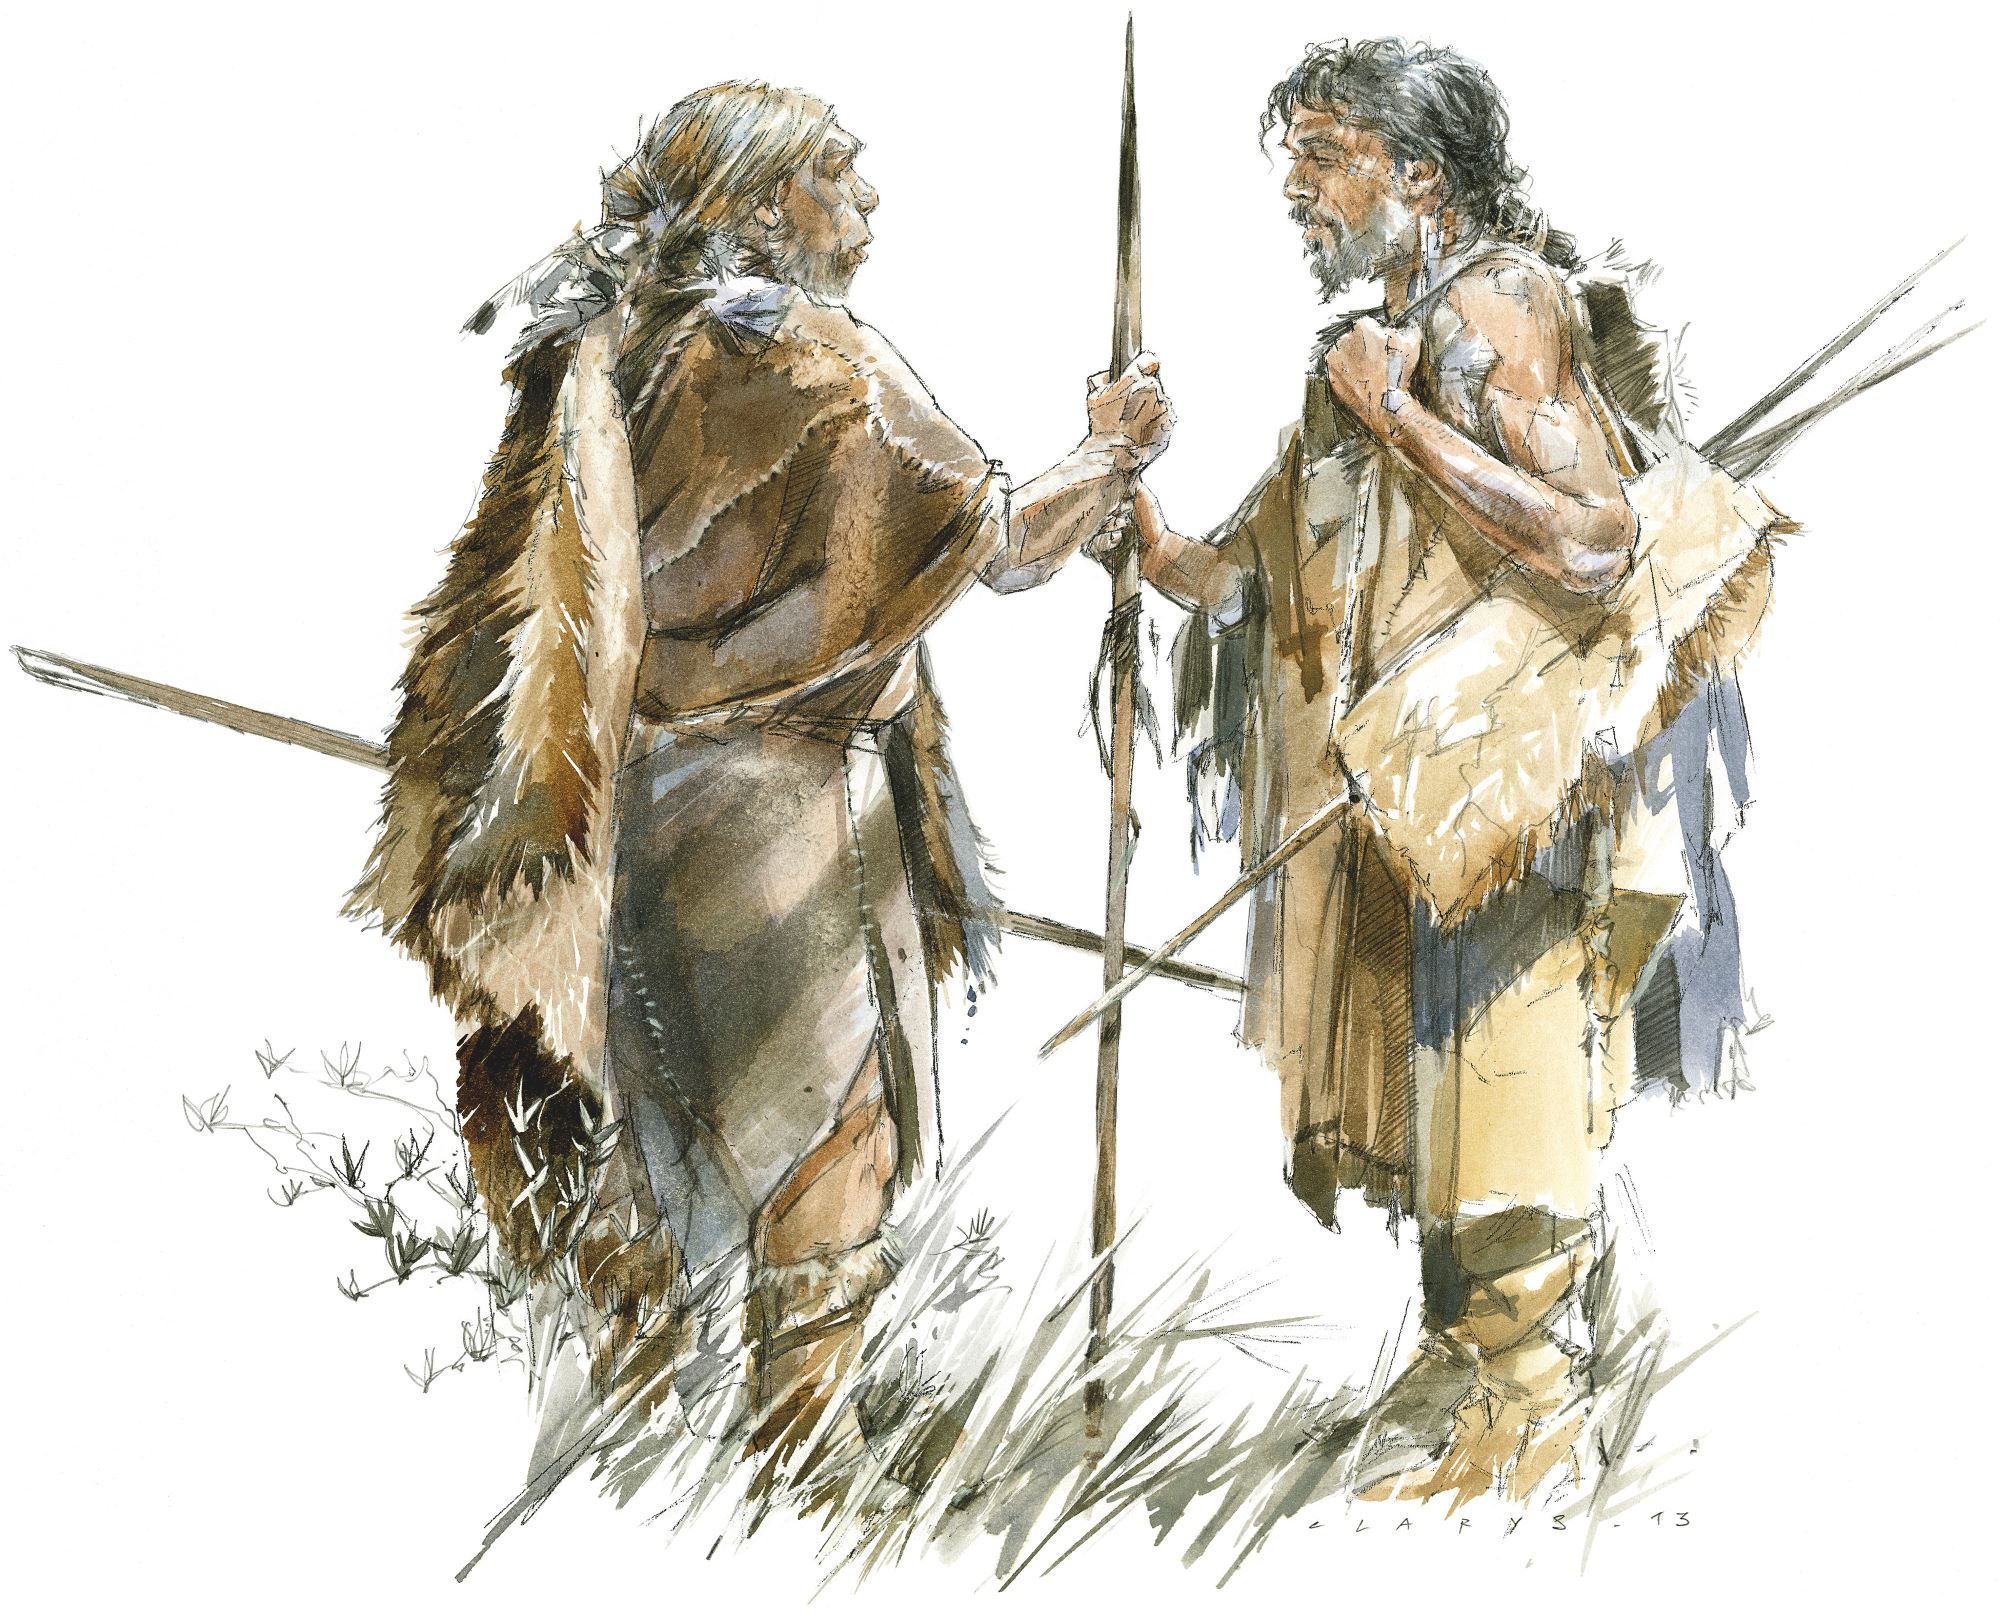 Nouvelle rencontre : interprétation d’une rencontre entre un Néandertalien (à gauche) et un Homo sapiens (à droite). © CLARYS / Cité de la Préhistoire, Orgnac l’Aven 13